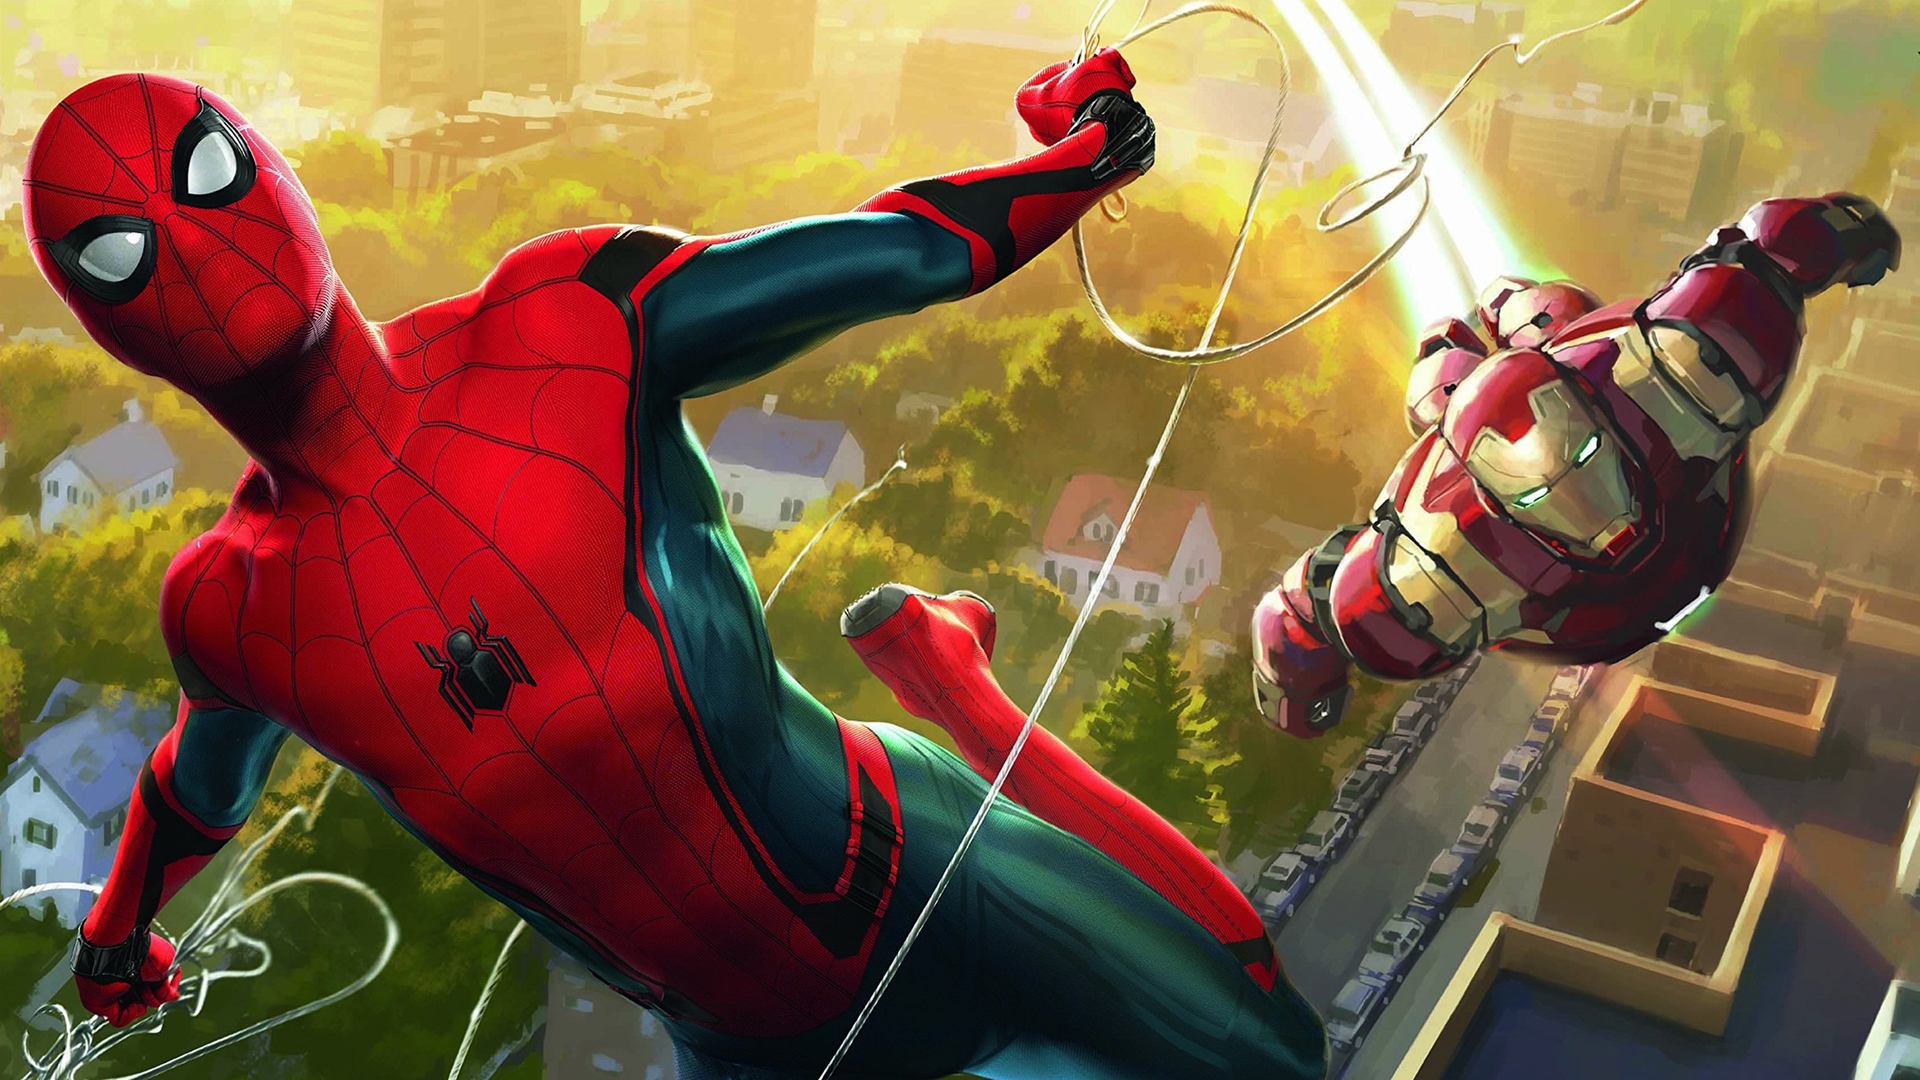 fond d'écran spiderman homecoming hd,homme araignée,super héros,personnage fictif,fiction,héros